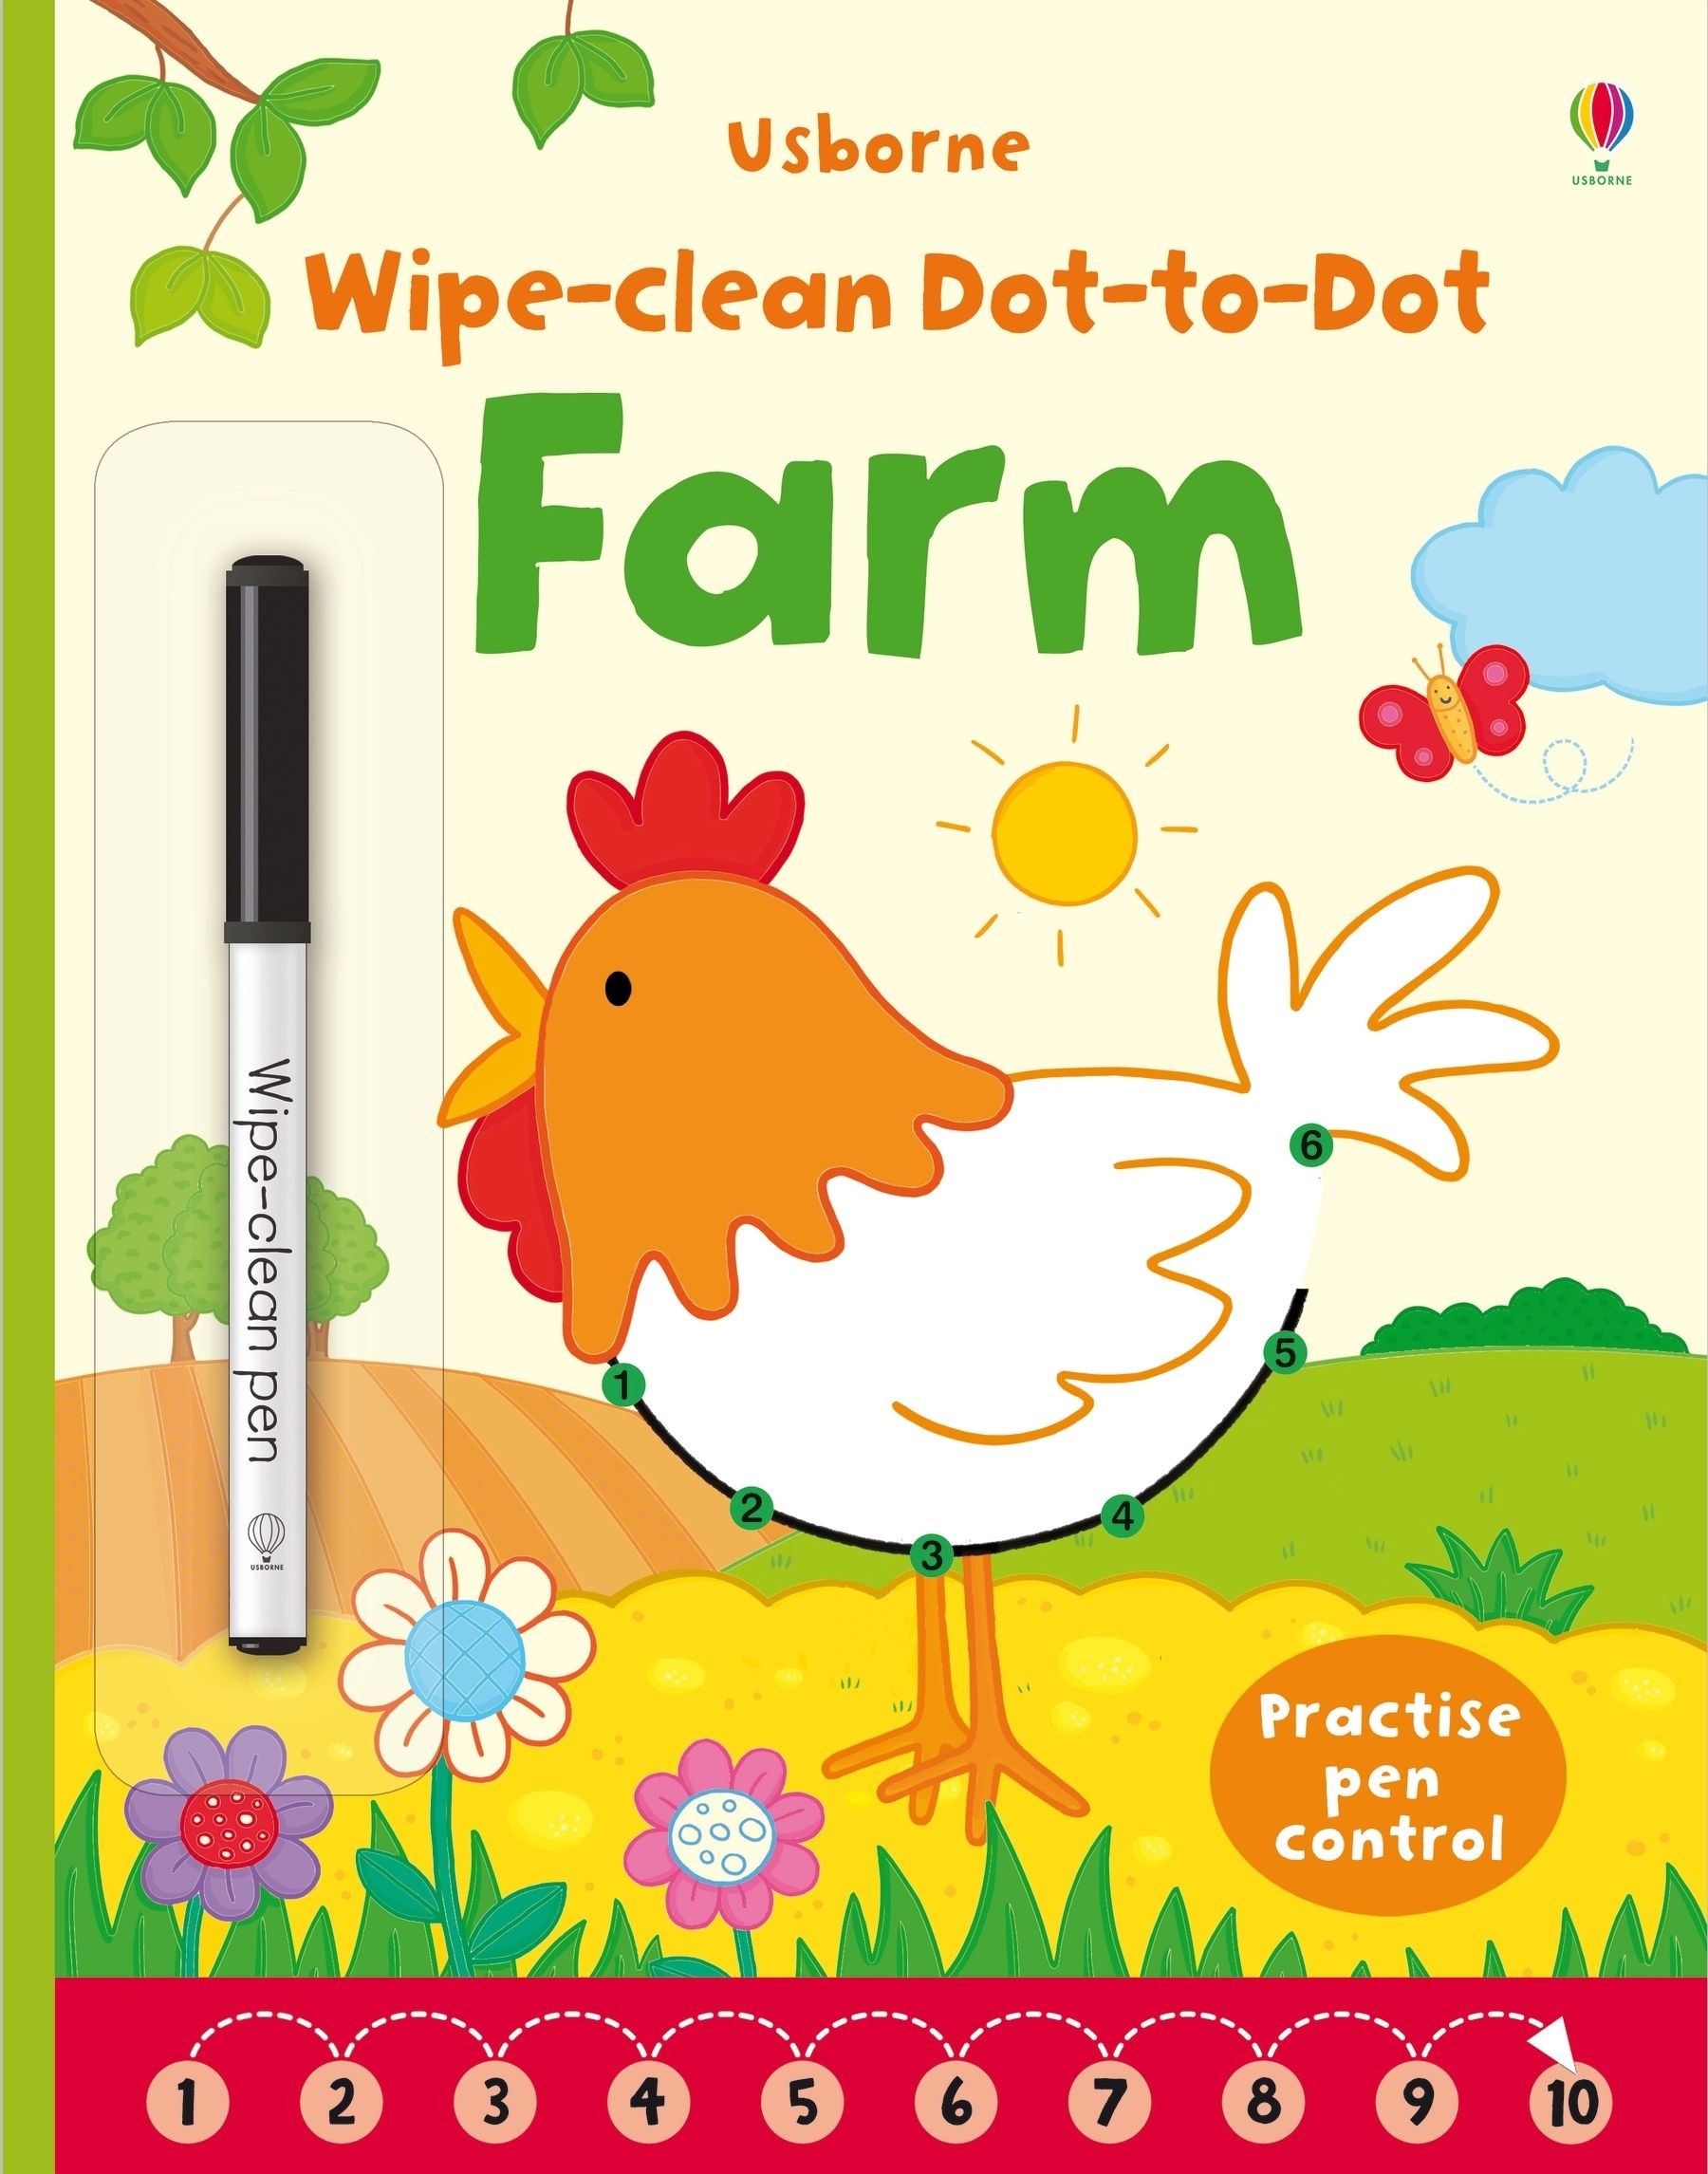 Wipe-clean Dot-to-dot Farm